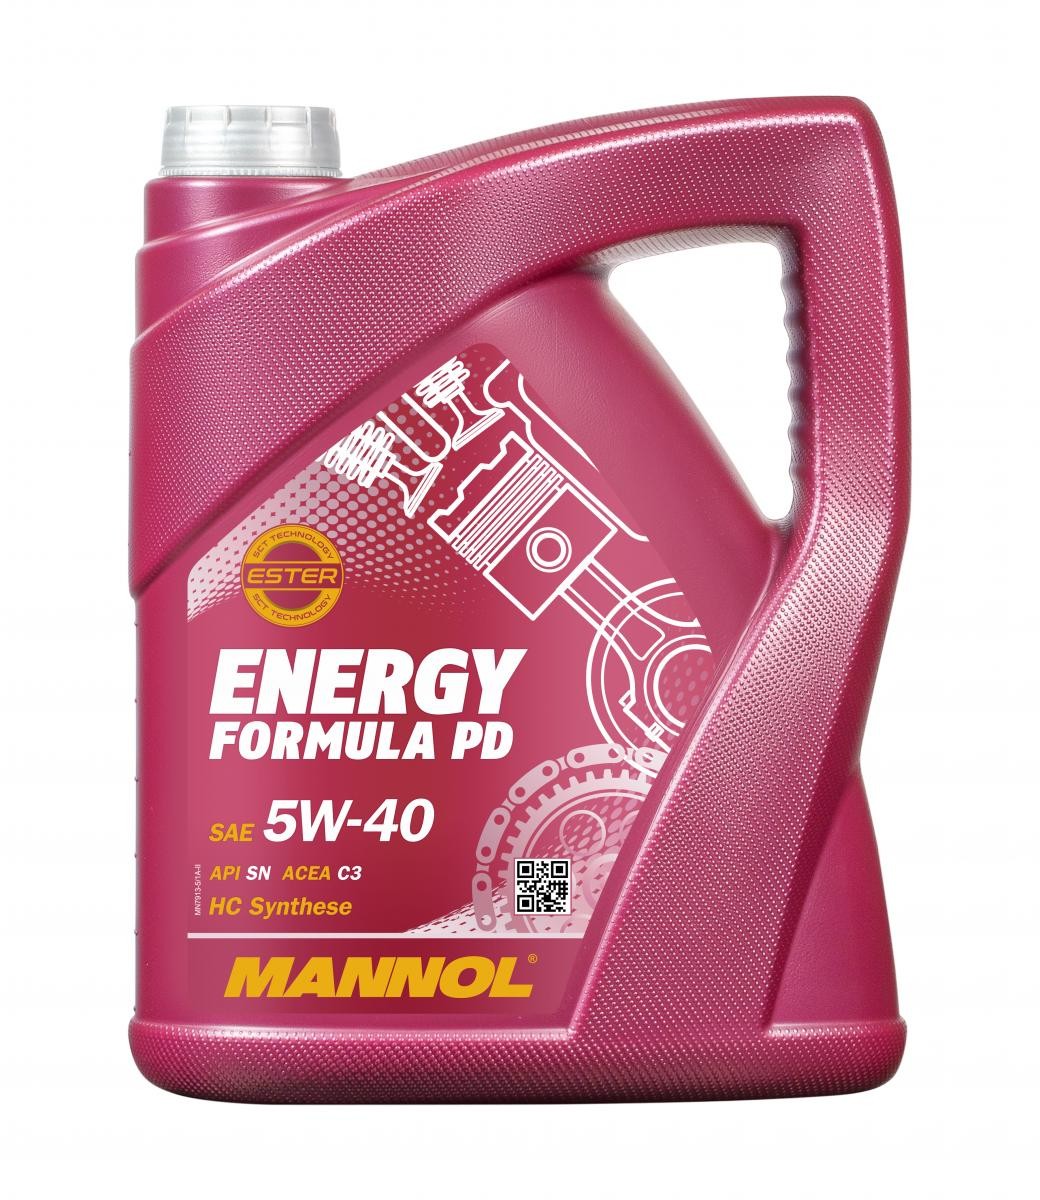 MANNOL ENERGY FORMULA PD MN7913-5 Moottoriöljy 5W-40, 5l, Synteettinen öljy